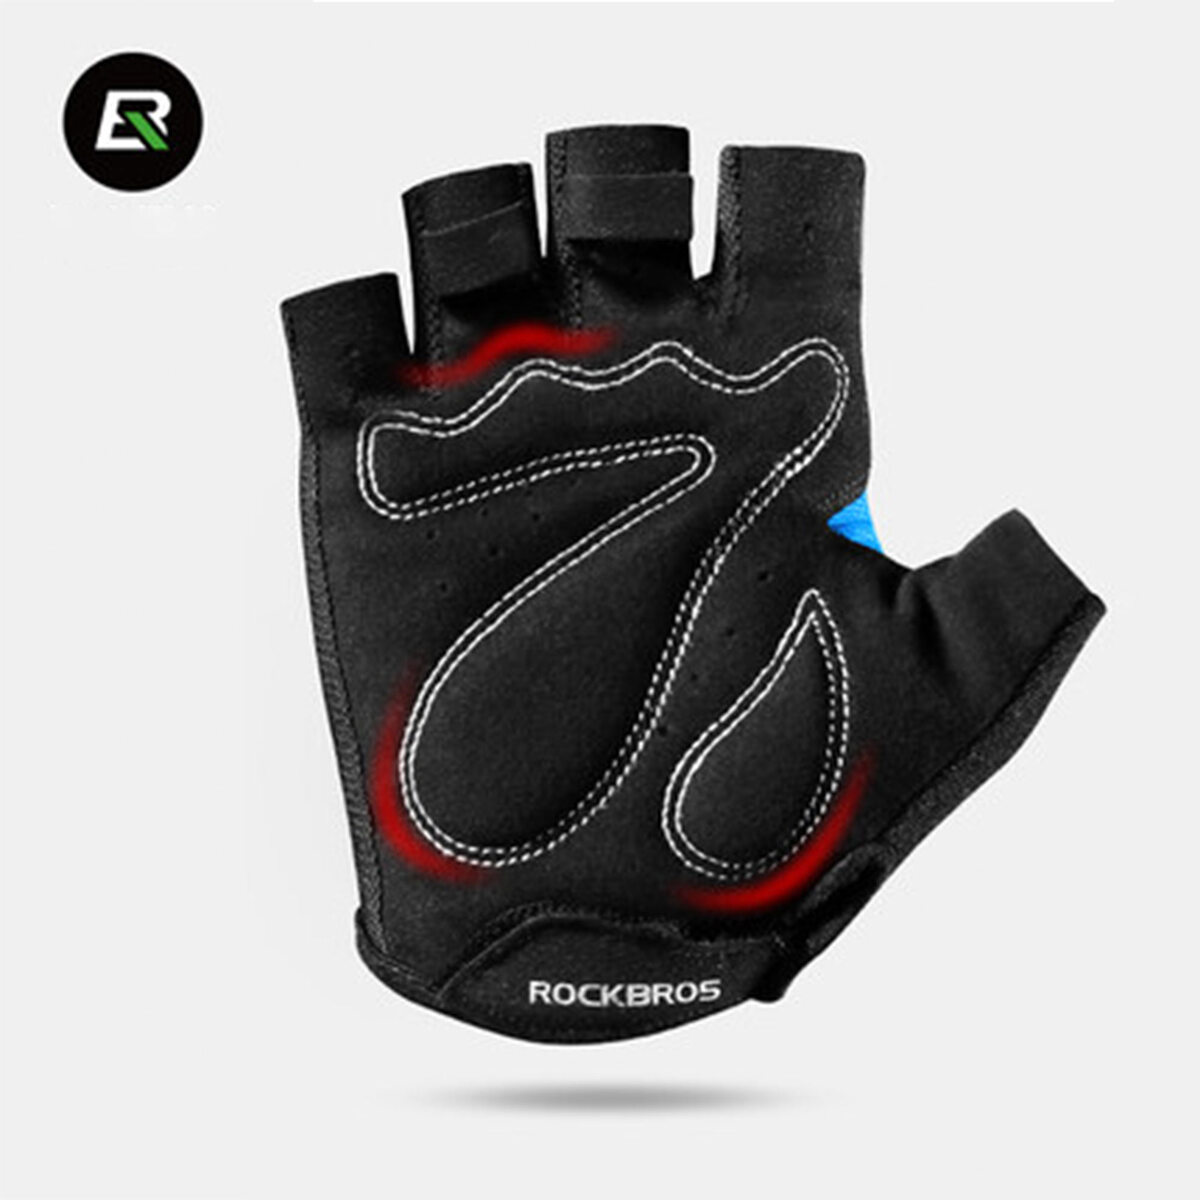 ROCKBROS Half Finger Cycling Gloves Green S099GR Medium